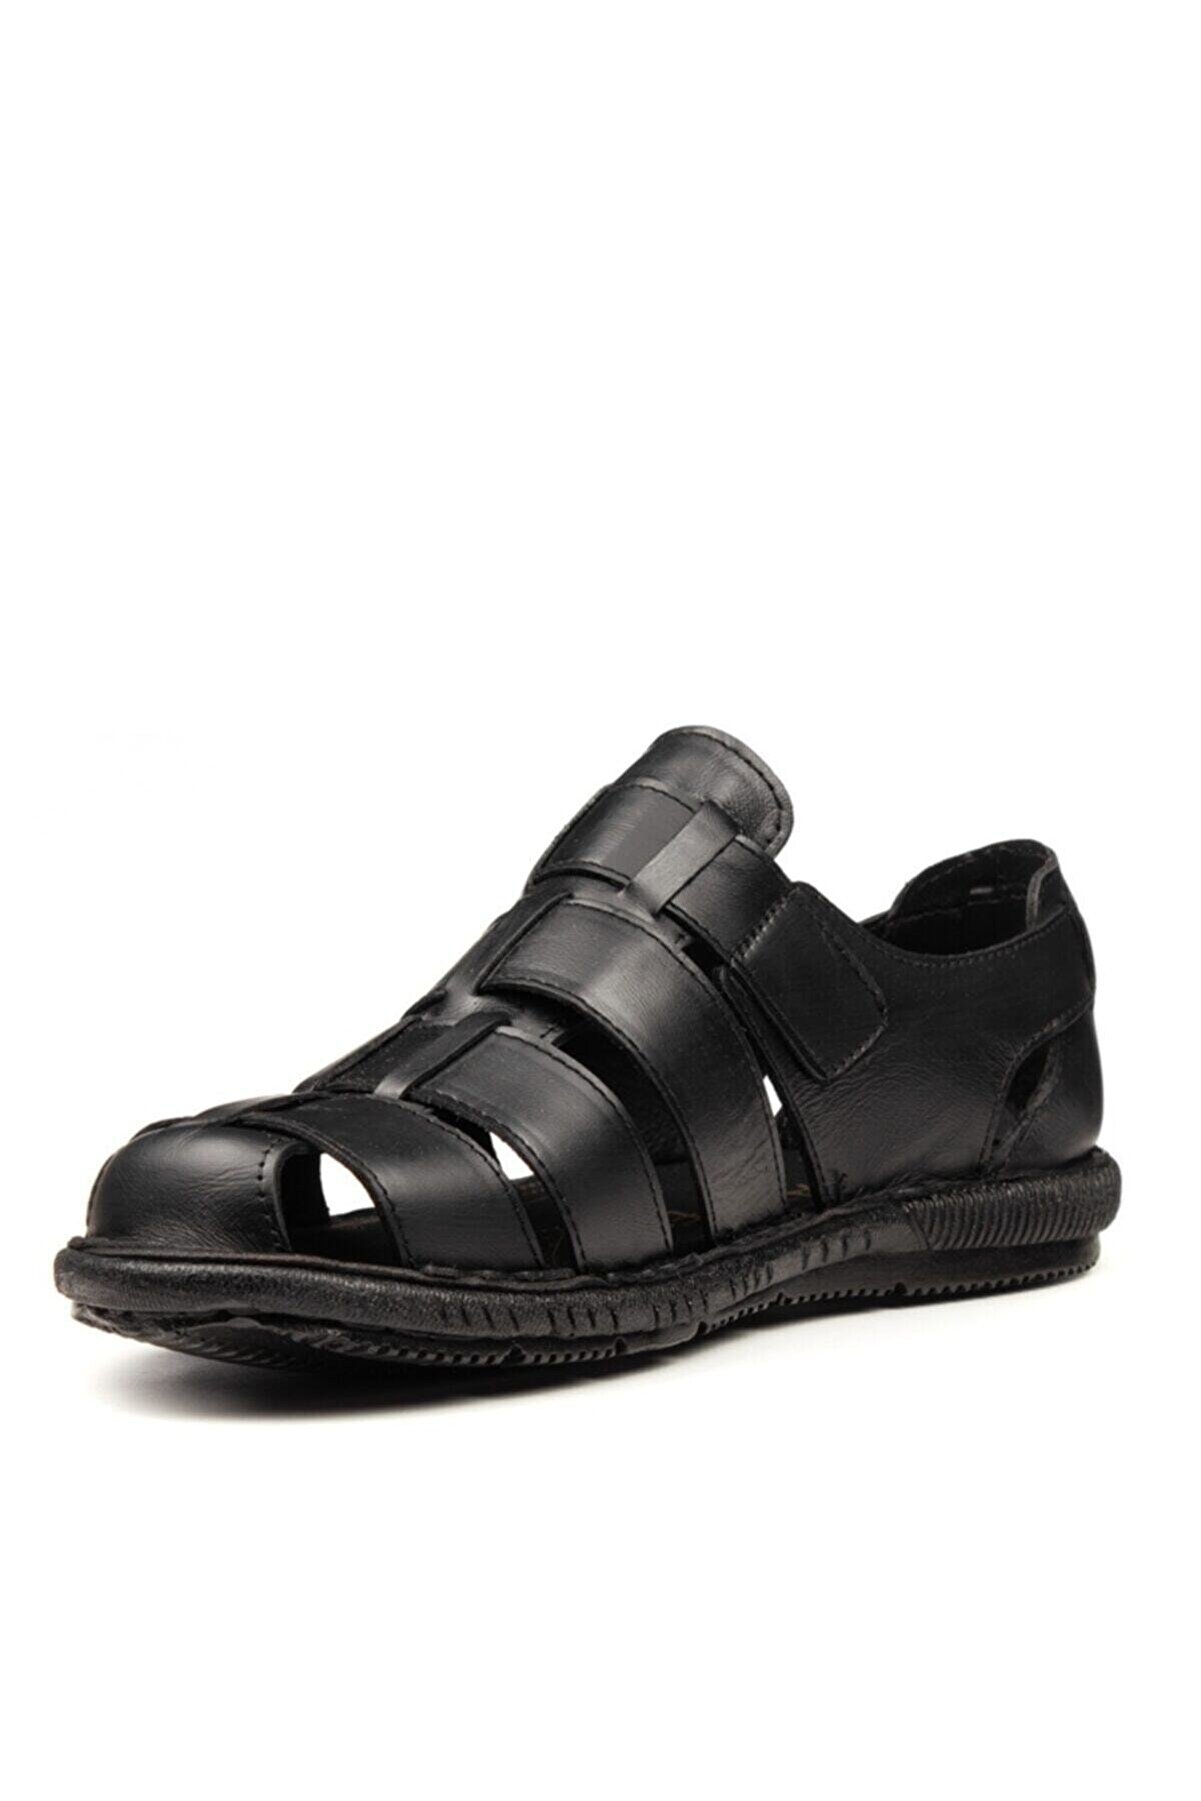 Lindelöf Erkek Siyah Hakiki Deri Günlük Sandalet Ayakkabı 063